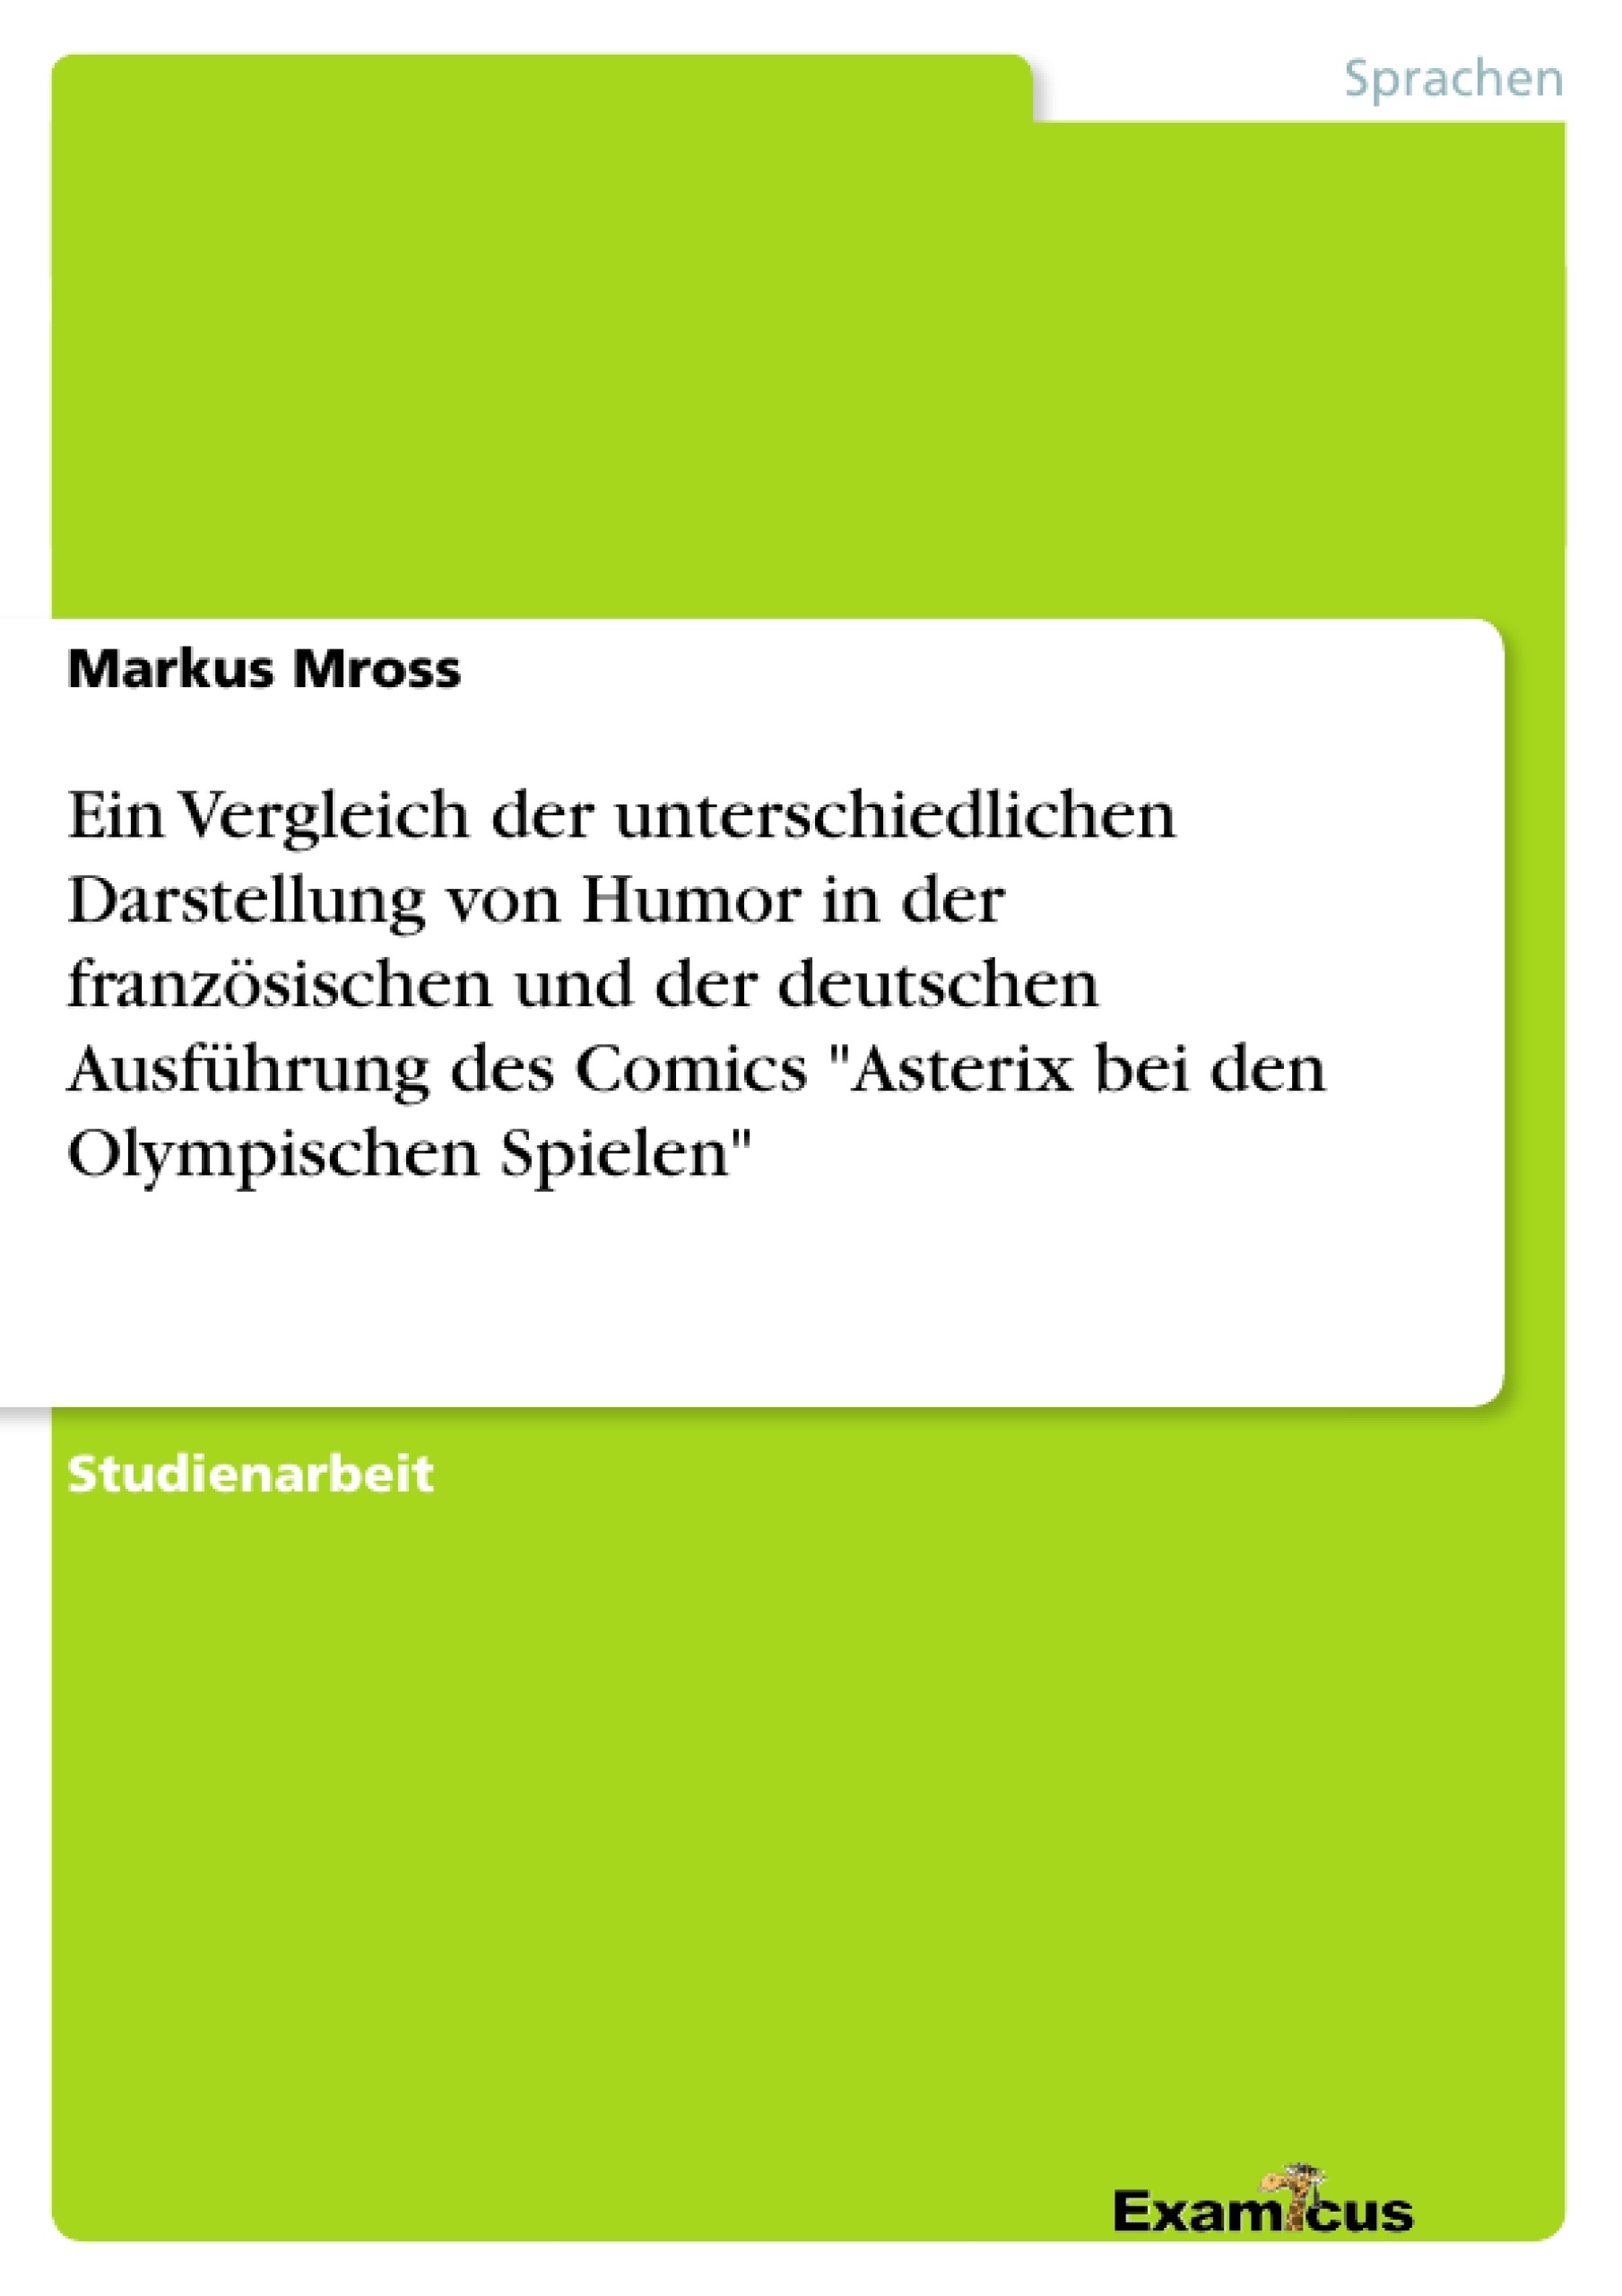 Titre: Ein Vergleich der unterschiedlichen Darstellung von Humor in der französischen und der deutschen Ausführung des Comics "Asterix bei den Olympischen Spielen"